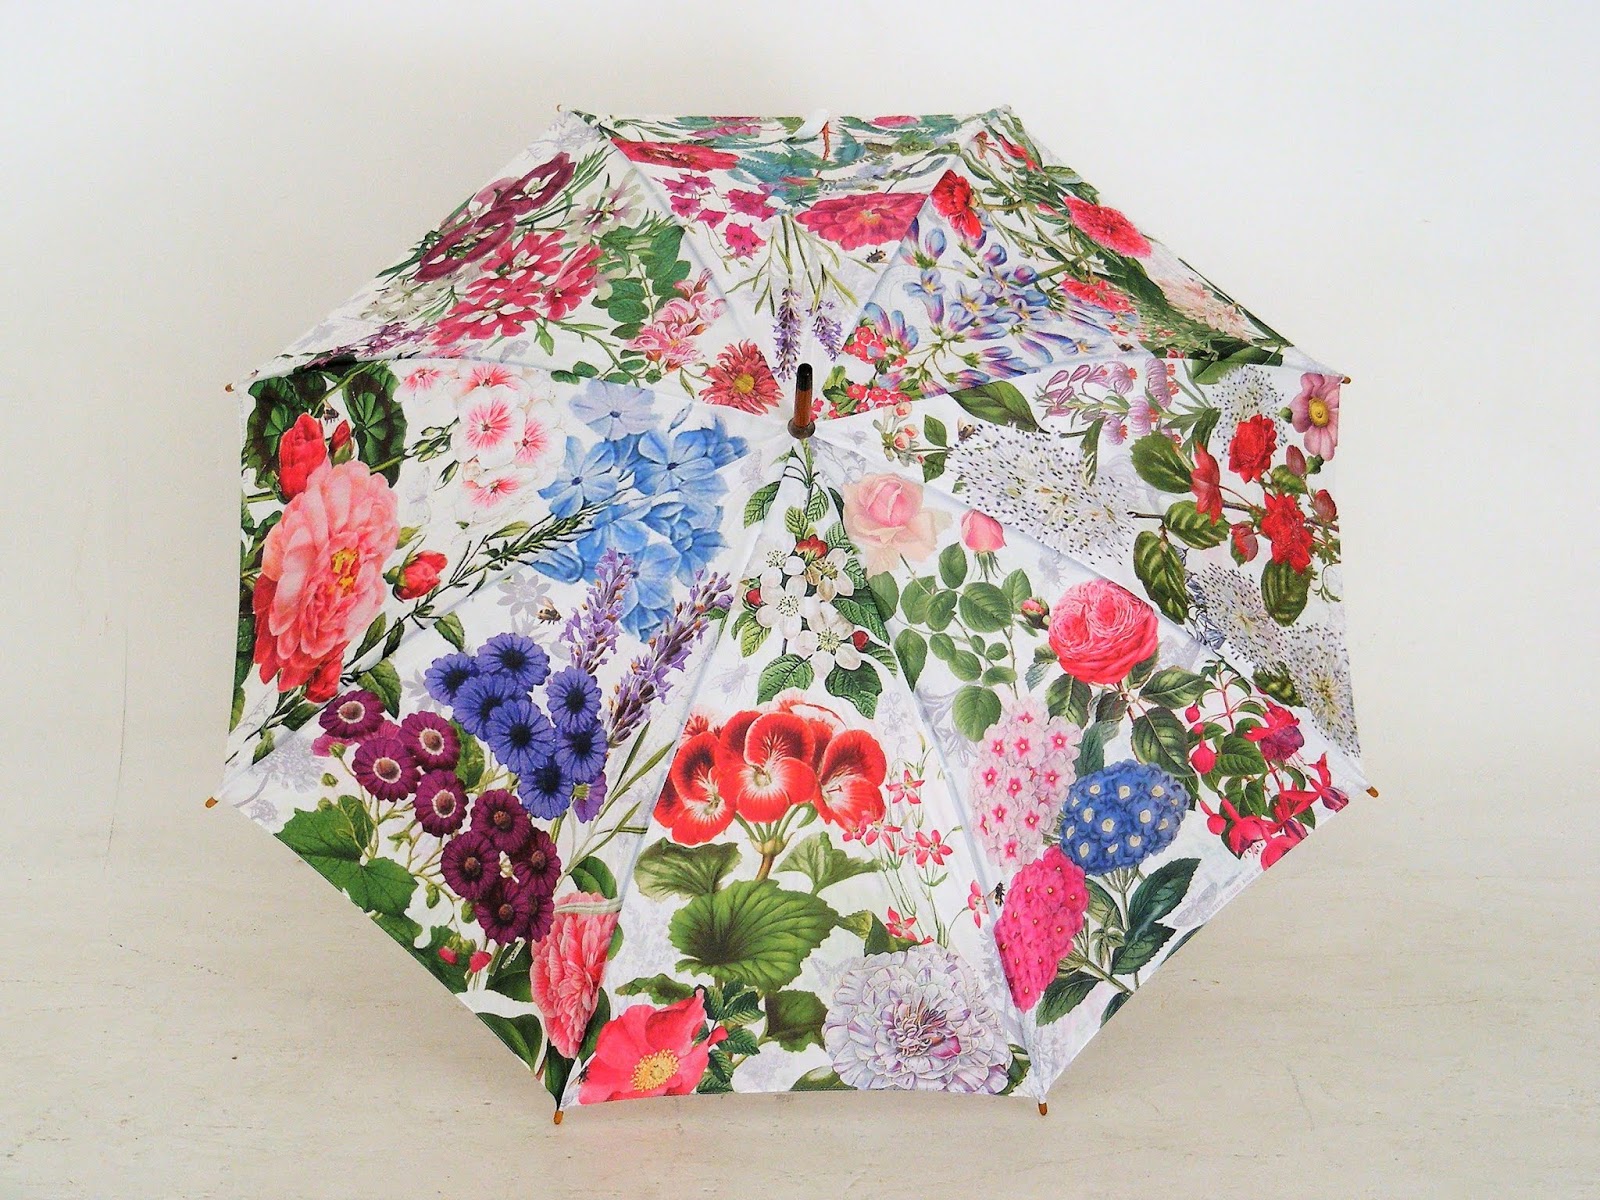 umbrella design 2019